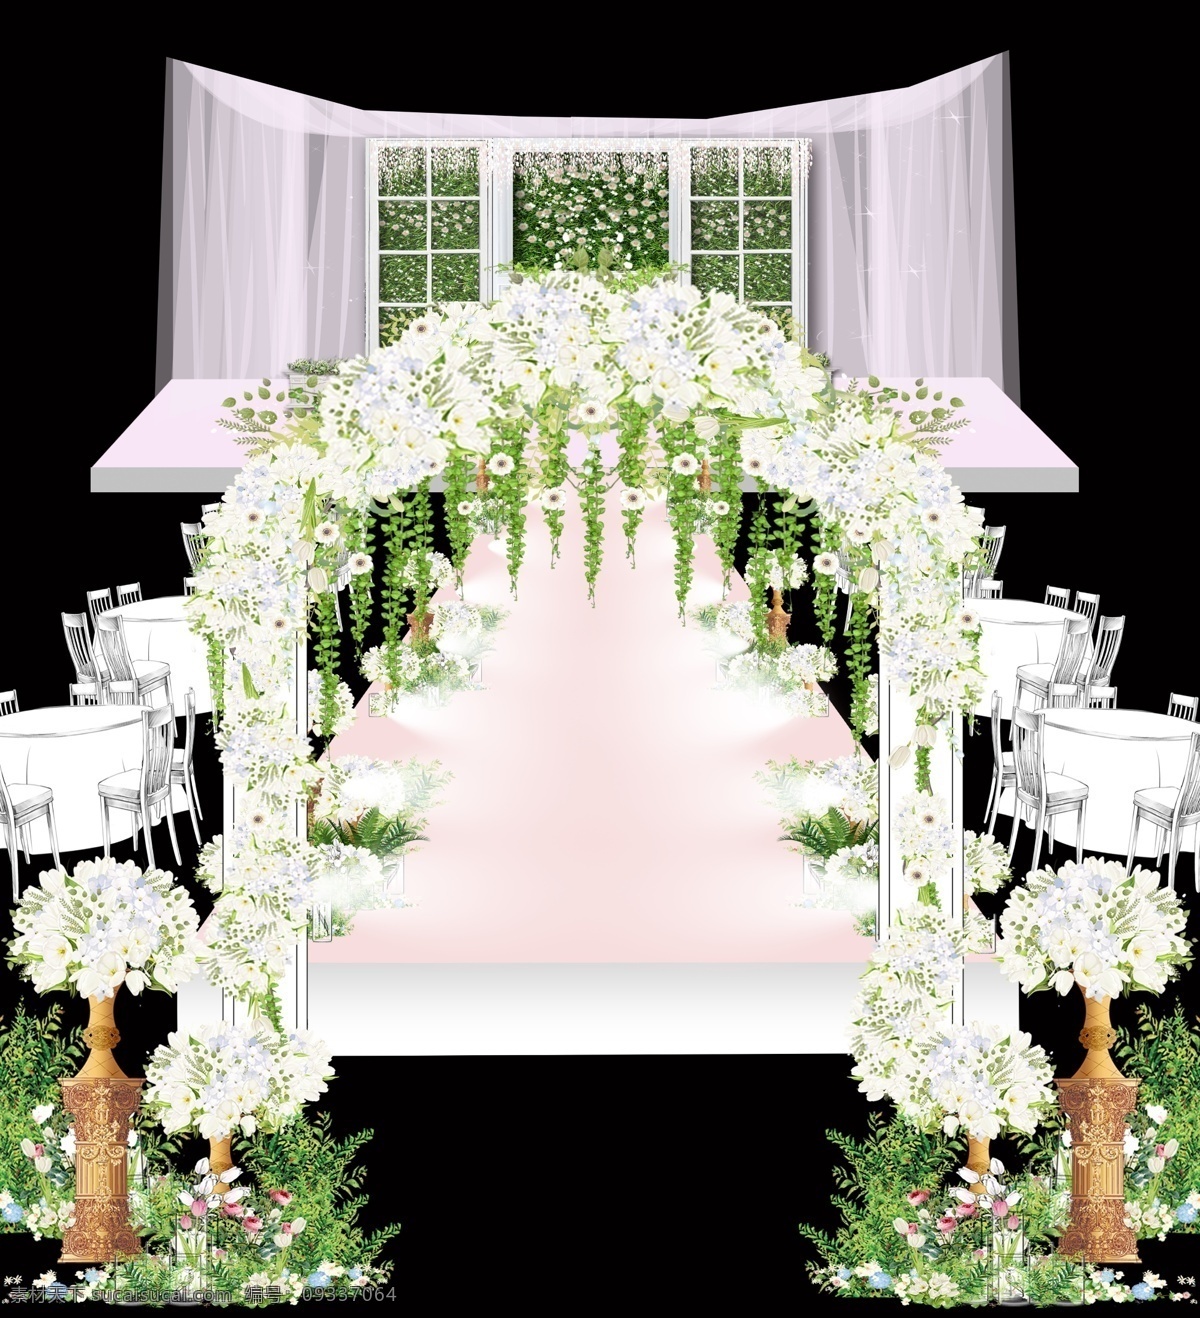 白绿色小清新 婚礼方案 婚礼效果图 婚礼设计 小清新婚礼 婚礼场景 分层